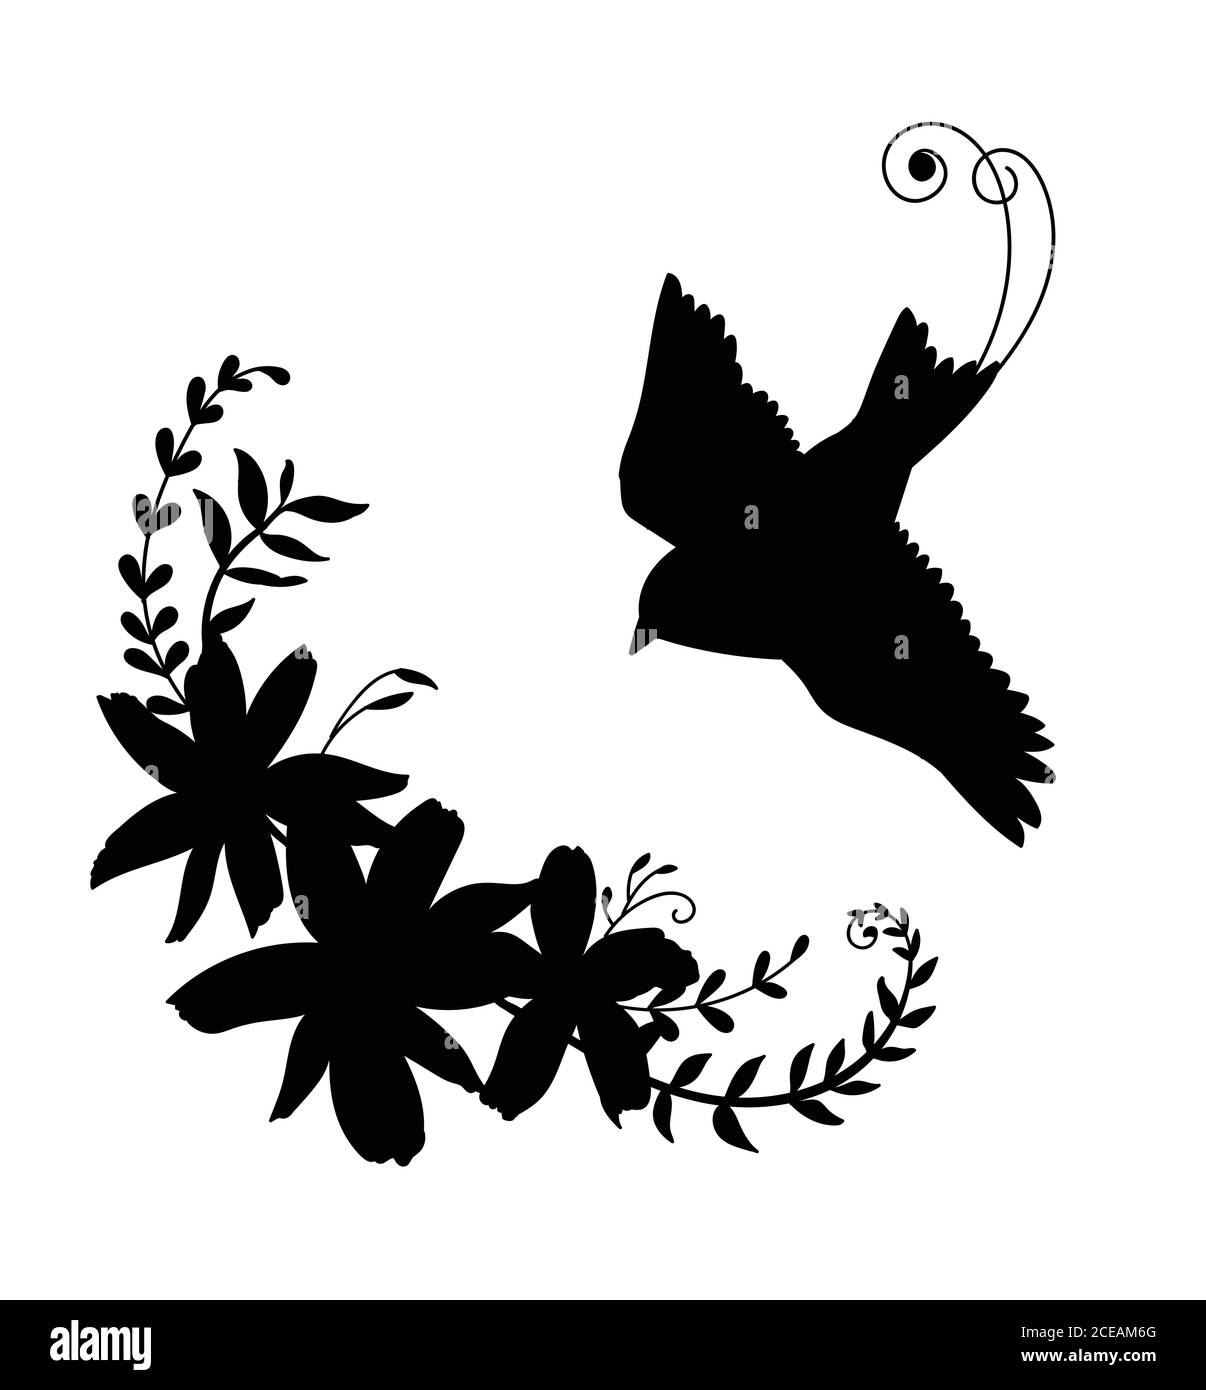 Modèle vectoriel vol d'oiseau et de fleurs. Illustration de silhouette noire isolée sur blanc. Pour les invitations de mariage, le design, l'impression, le t-shirt, la décoration, Illustration de Vecteur